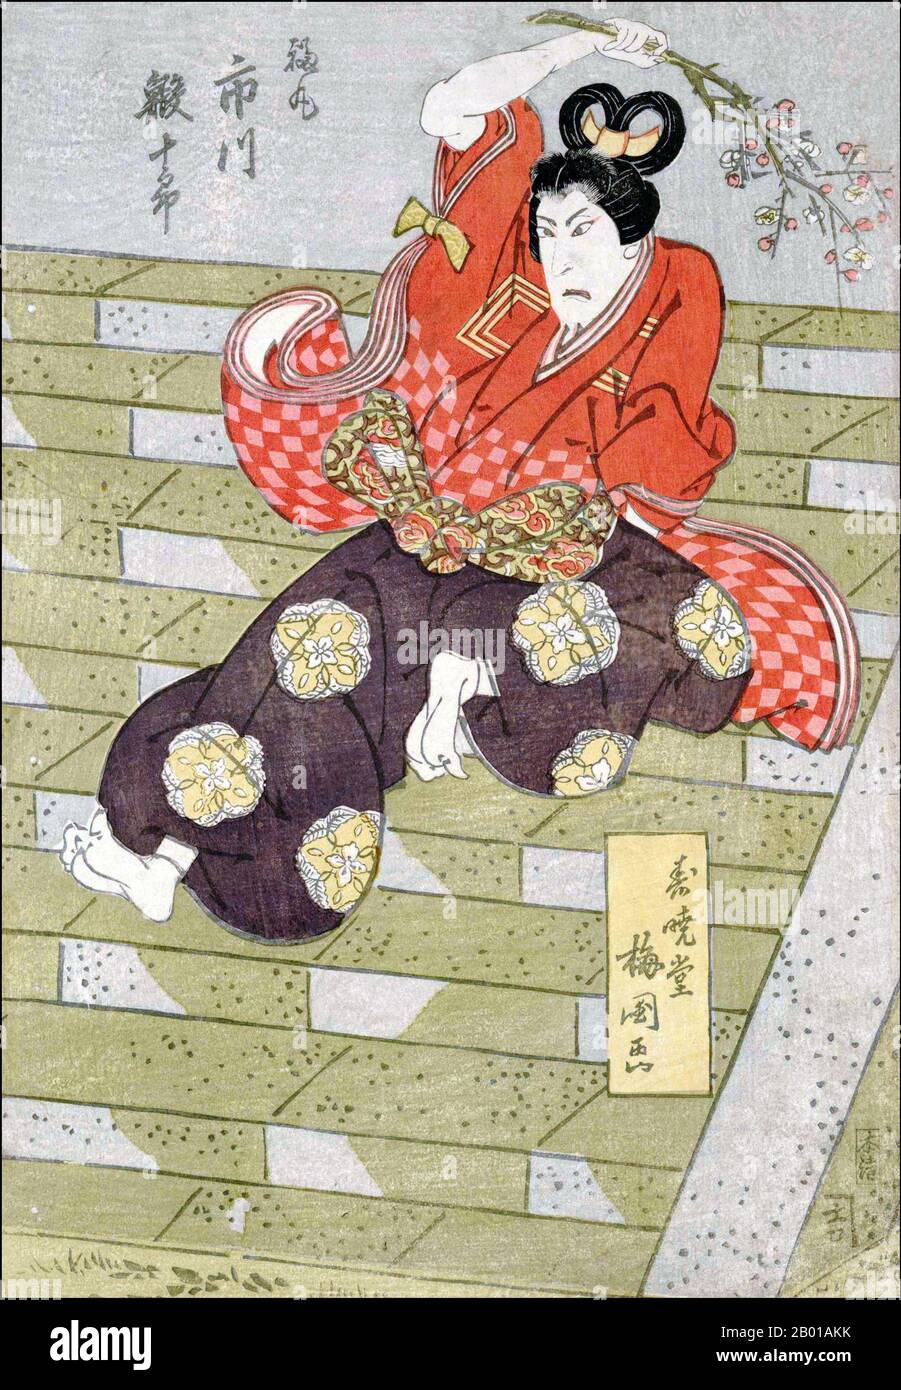 Japon: L'acteur Ichikawa Ebijuro. Impression de blocs de bois Ukiyo-e par Toyokawa Umekuni (fl. Début-mi-19th siècle), 1820. Ukiyo-e, littéralement « images du monde flottant », est un genre de gravures japonaises sur bois (ou coupes de bois) et de peintures produites entre les 17th et 20th siècles, avec des motifs de paysages, des contes de l'histoire, du théâtre, et des quartiers de plaisir. C'est le principal genre artistique de l'impression de blocs de bois au Japon. Habituellement, le mot ukiyo est littéralement traduit en anglais par « monde flottant », se référant à une conception d'un monde évanescent et d'une beauté impermanente et fugace. Banque D'Images